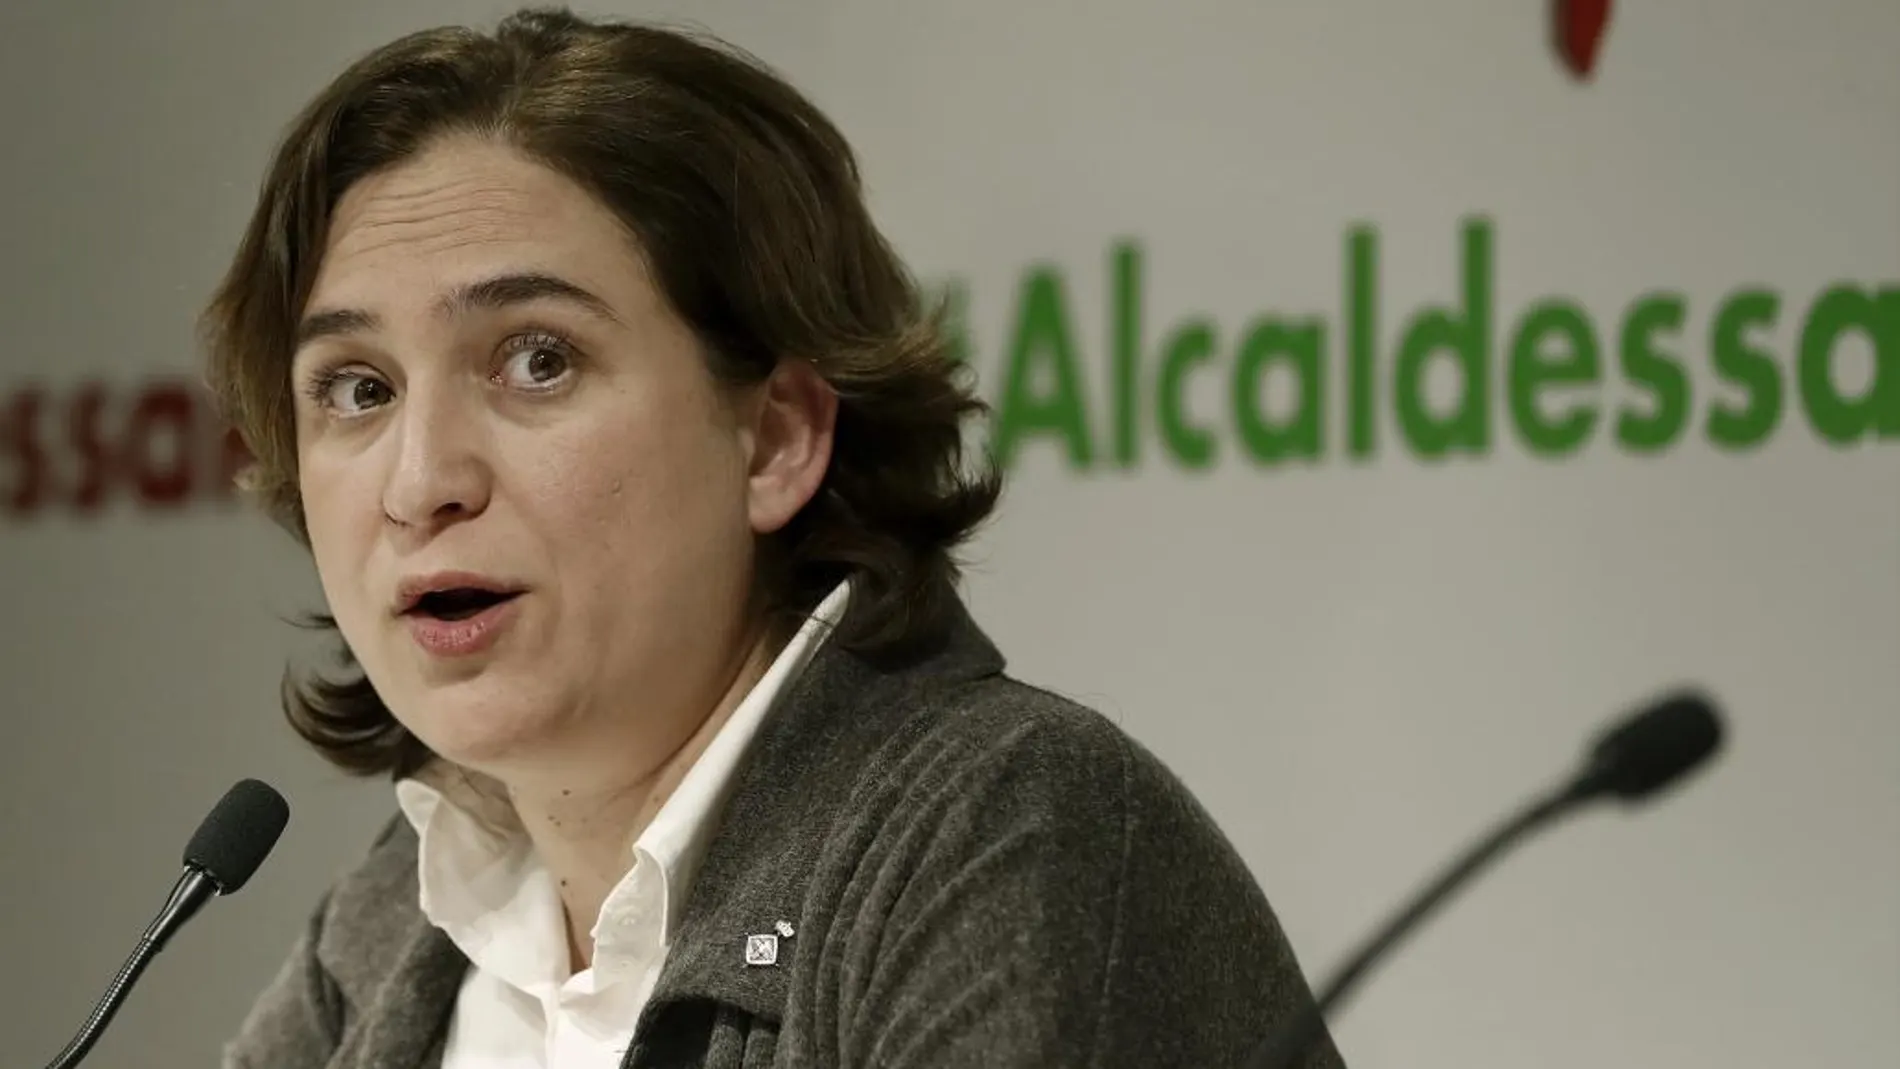 La alcaldesa de Barcelona, Ada Colau, se ha incorporado hoy tras su baja de maternidad